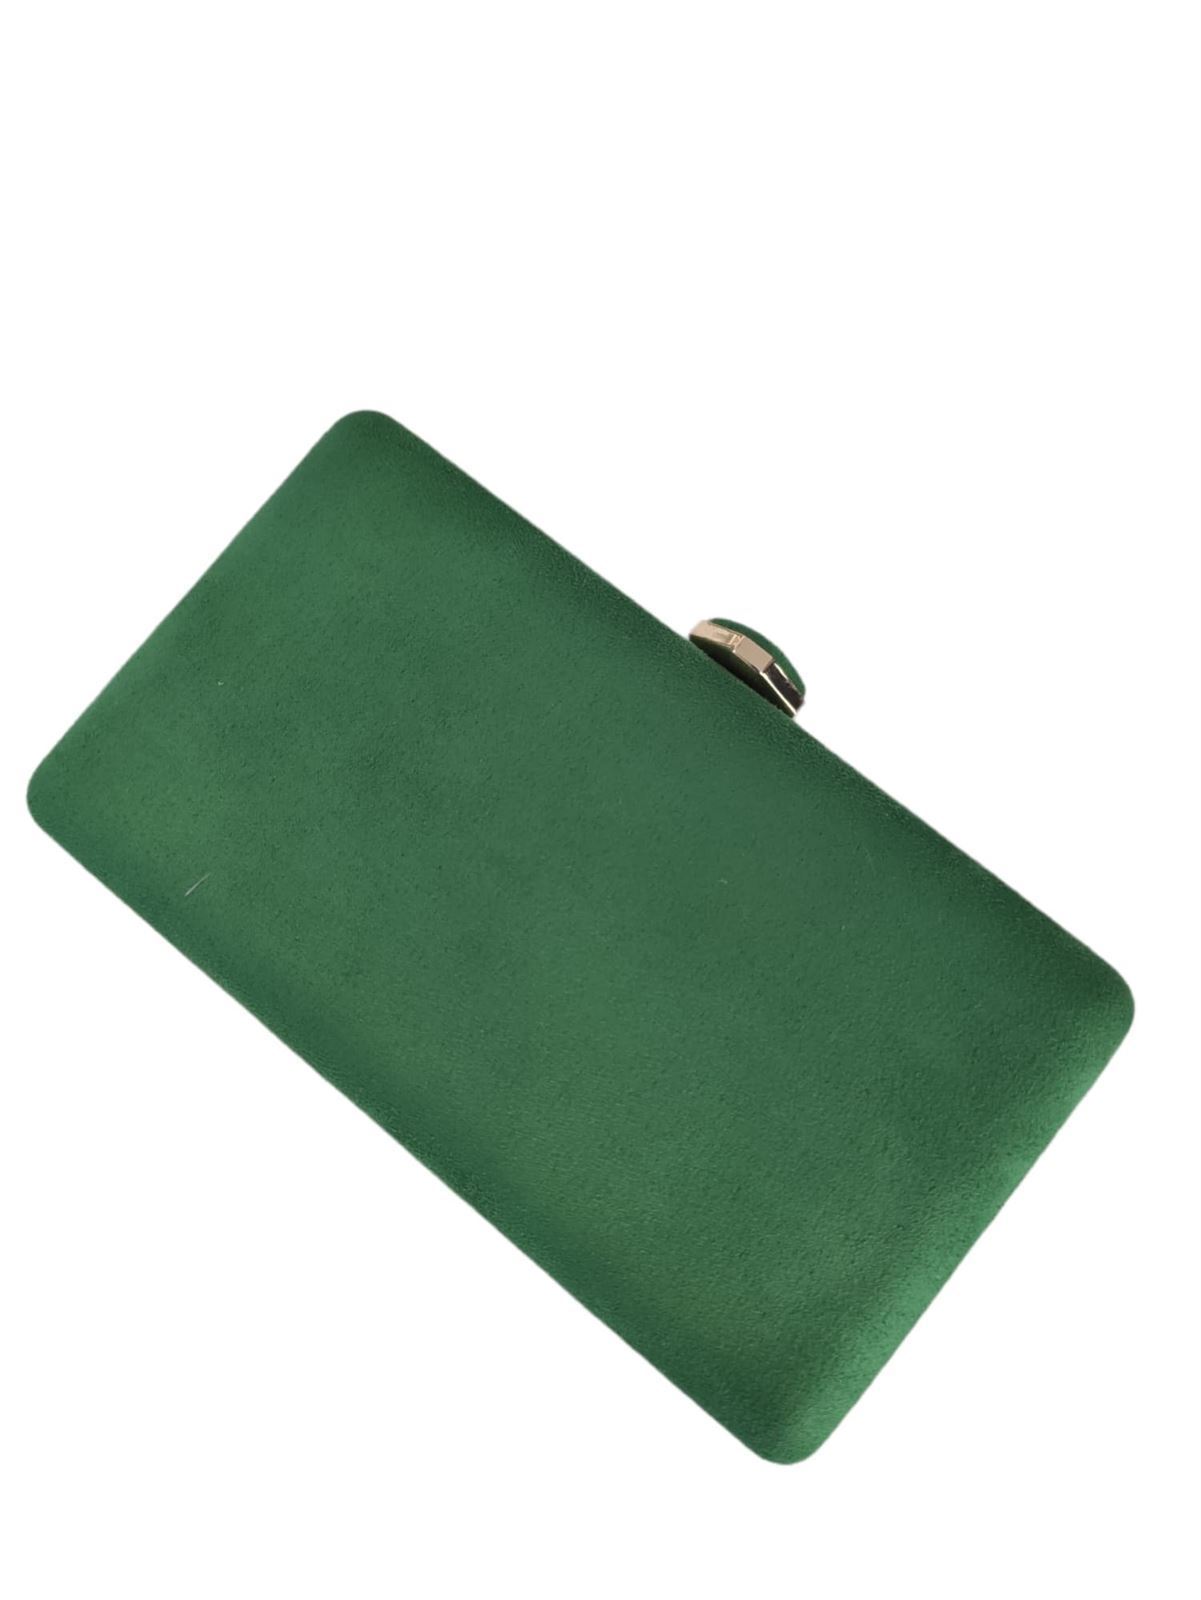 Bolso clutch de fiesta en verde hierva - Imagen 4